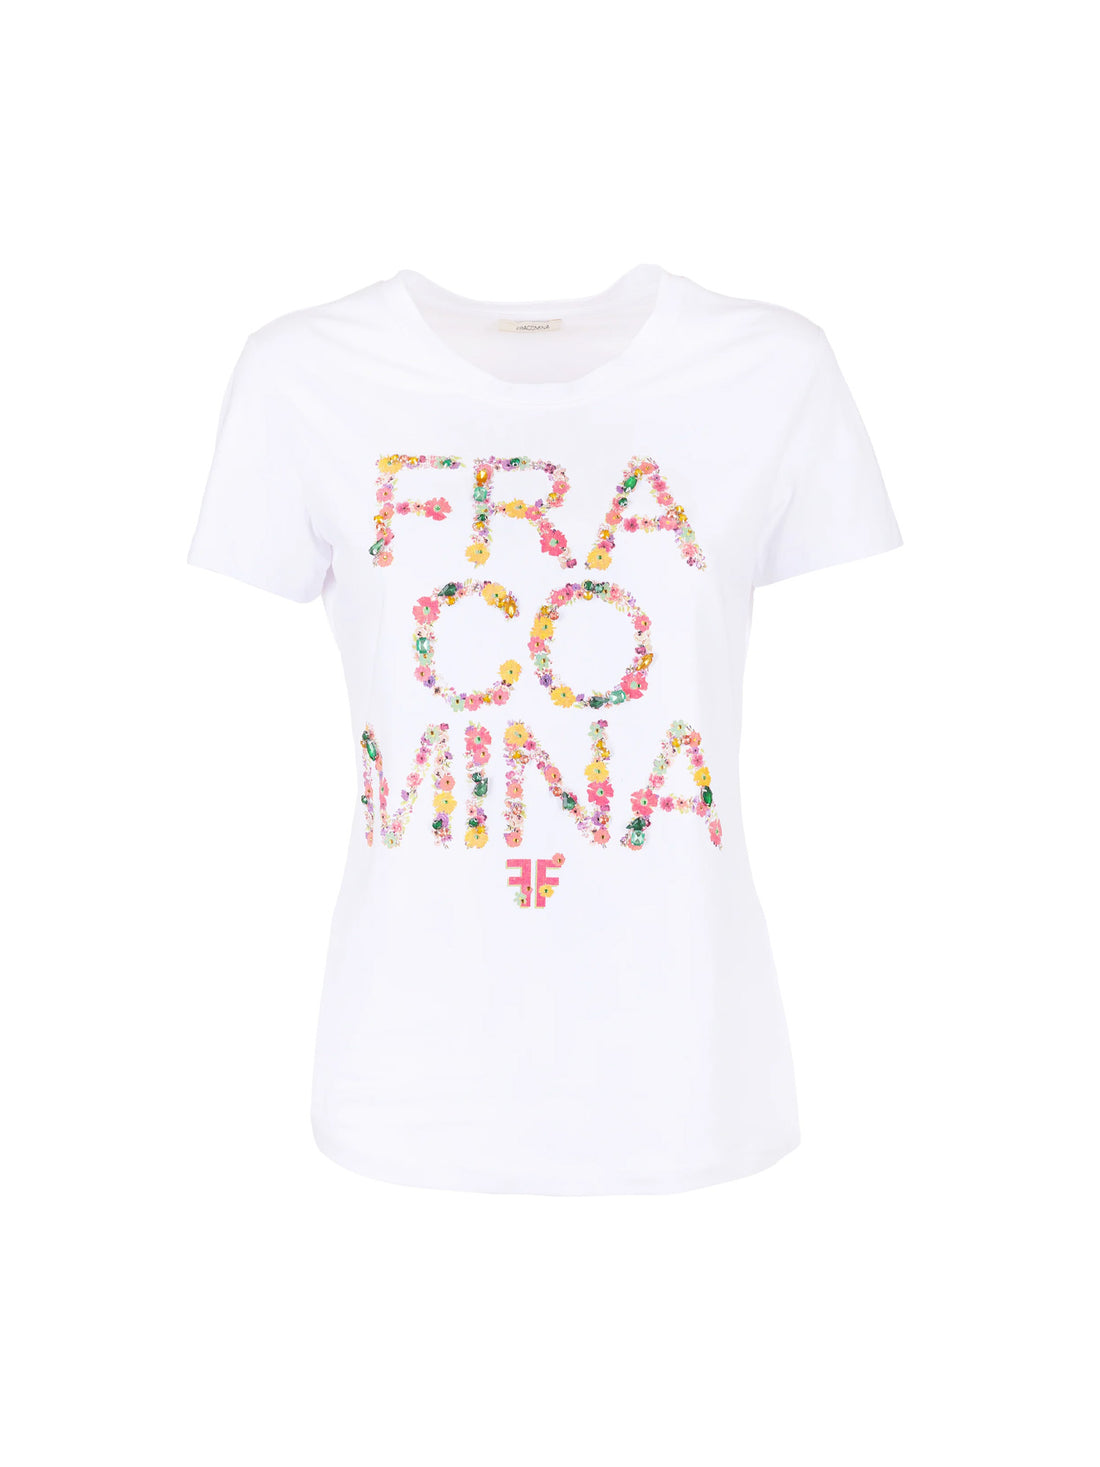 T-shirt Bianco Fracomina